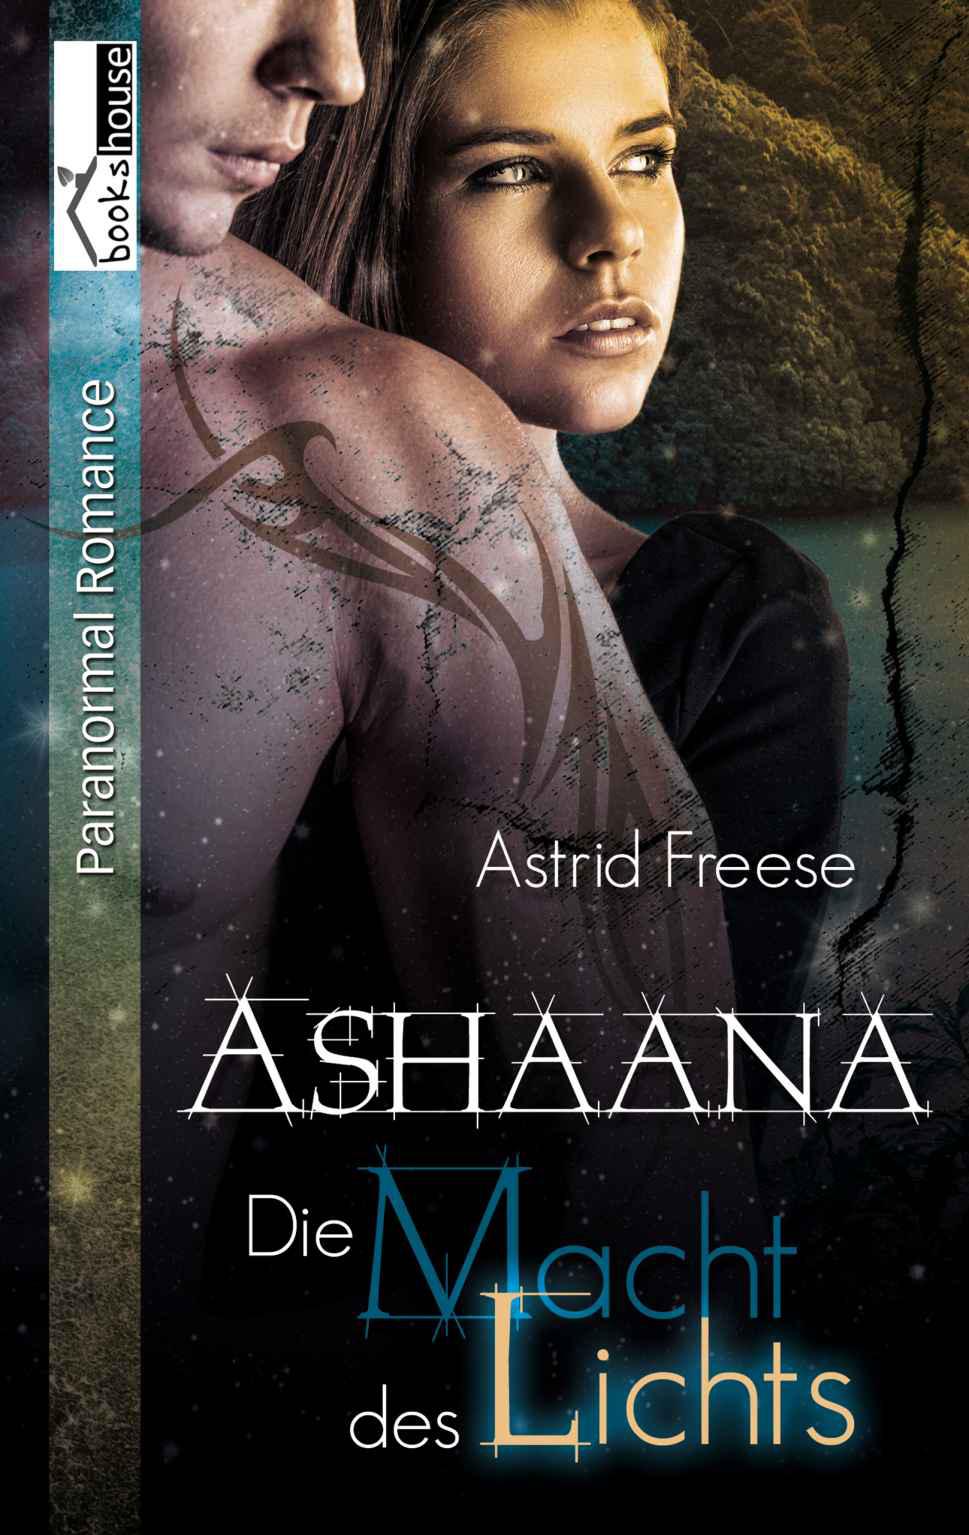 Die Macht des Lichts 01 - Ashaana